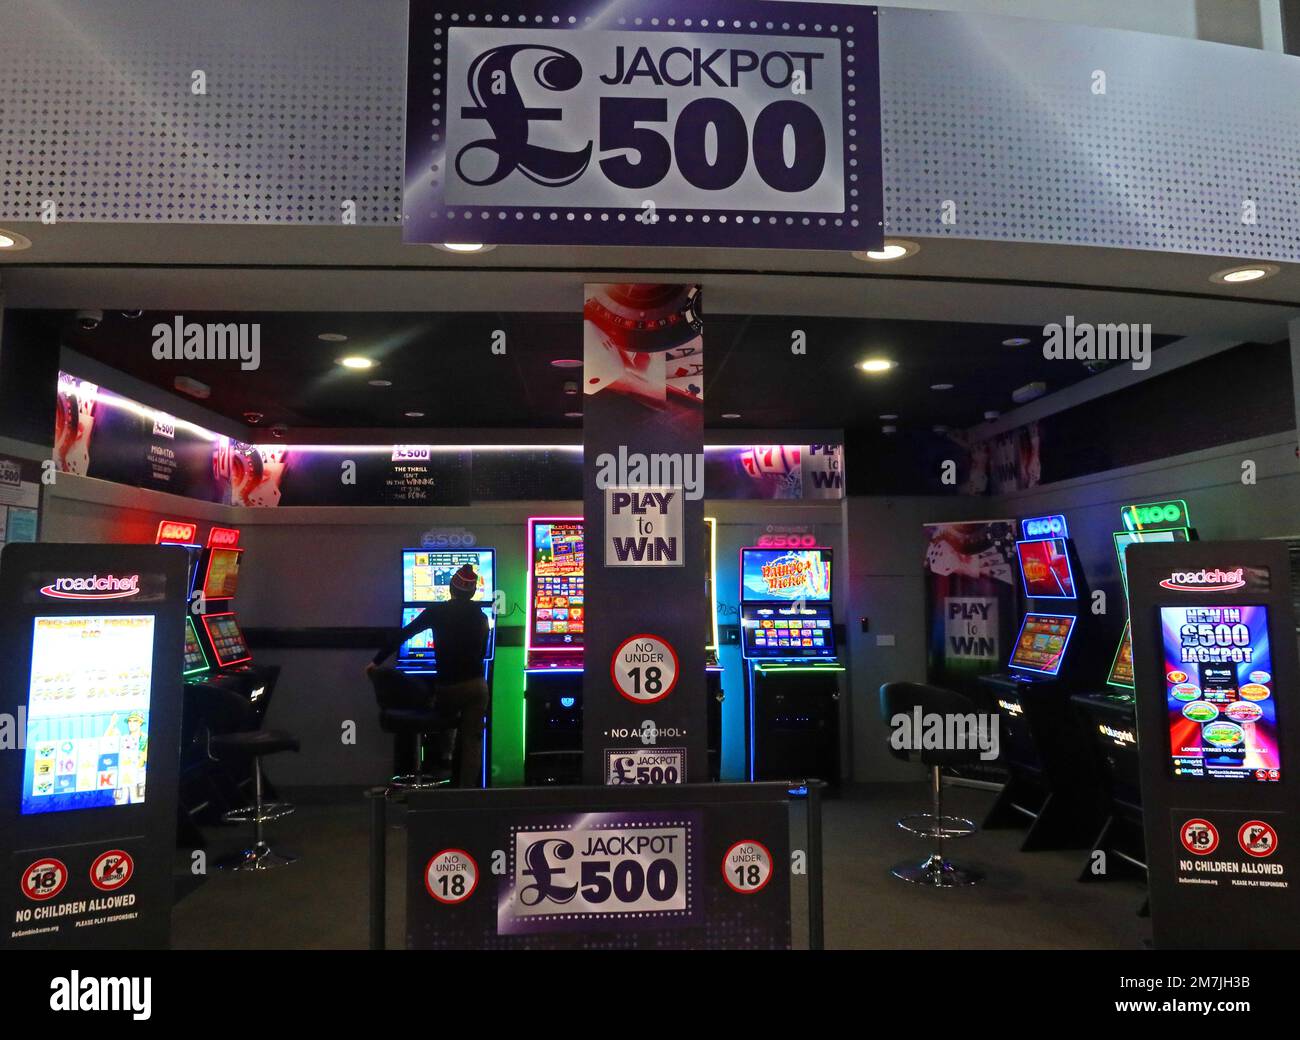 £500 machines à fruits jackpot, Blueprint gaming - Groupe Gauselmann, à la zone de service de l'autoroute Roadchef, pour les joueurs Banque D'Images